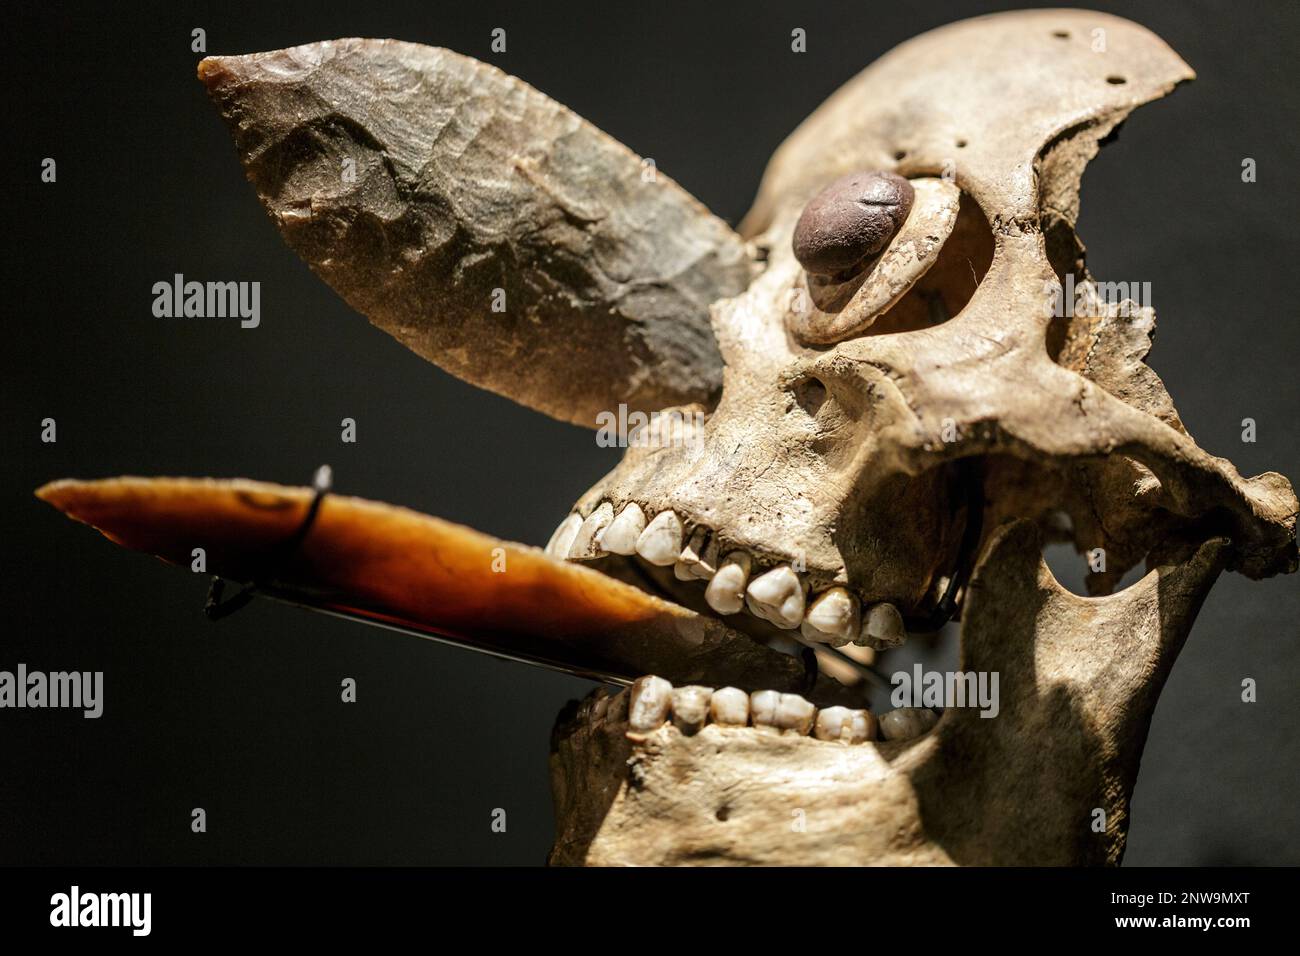 01/03/2020 Mexica masque de crâne ornemental incrusté dans le nez et la bouche avec des lames obsidiennes comme celles utilisées dans les sacrifices humains. Rituels méso-américains Banque D'Images